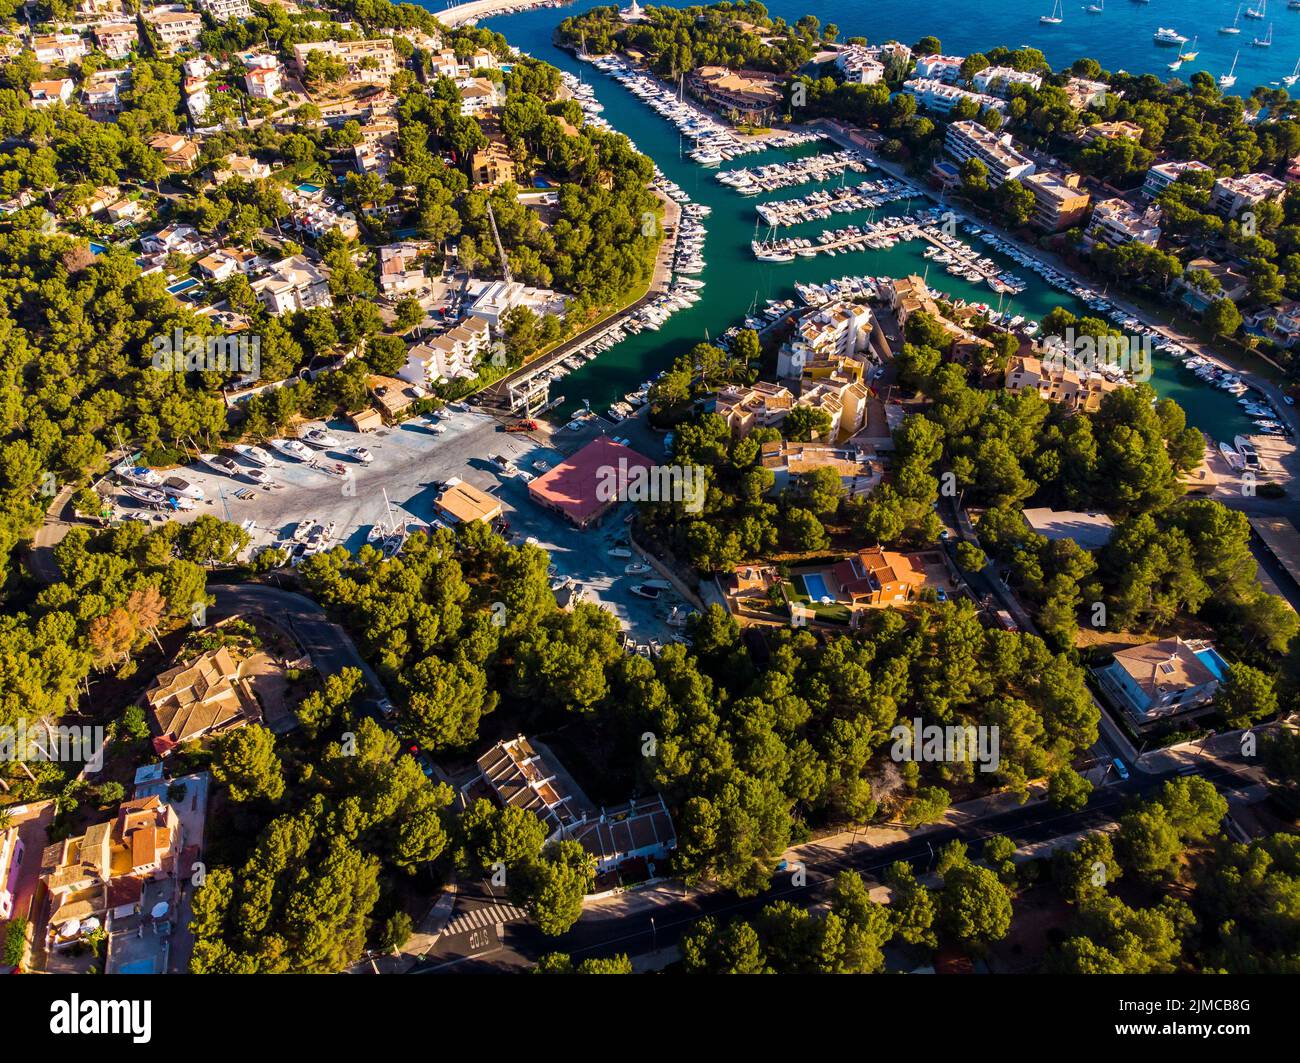 Aerial view of Santa Ponsa and the marina of Santa Ponsa Stock Photo